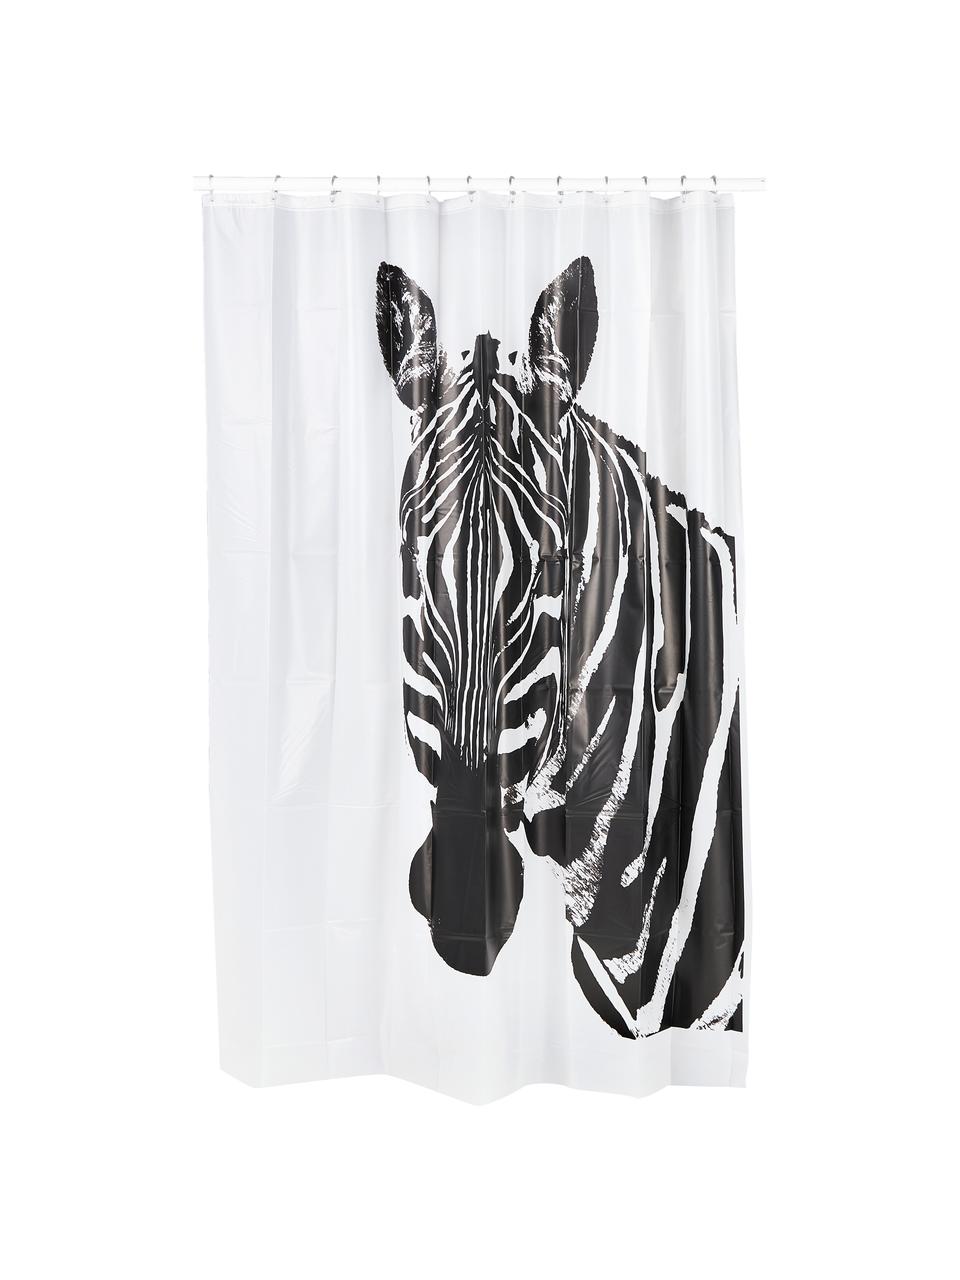 Duschvorhang Zebra in Schwarz/Weiß, 100% Kunststoff (PEVA), Schwarz, Weiß, B 180 x L 200 cm